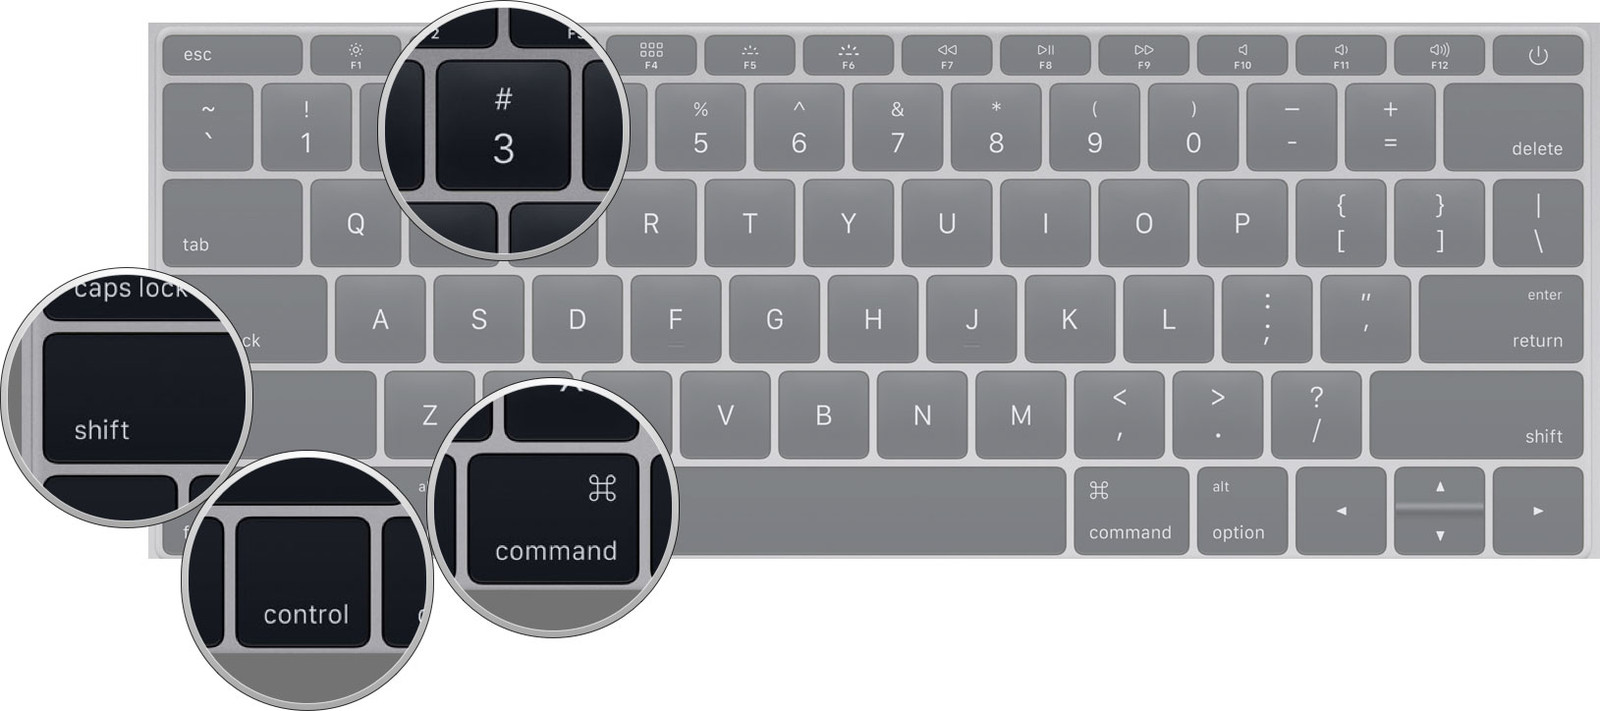 Command returned 1. Снимок экрана на маке. Скрин экрана на компьютере Мак. Кнопка Print Screen на клавиатуре Mac. Скриншот экрана Mac.